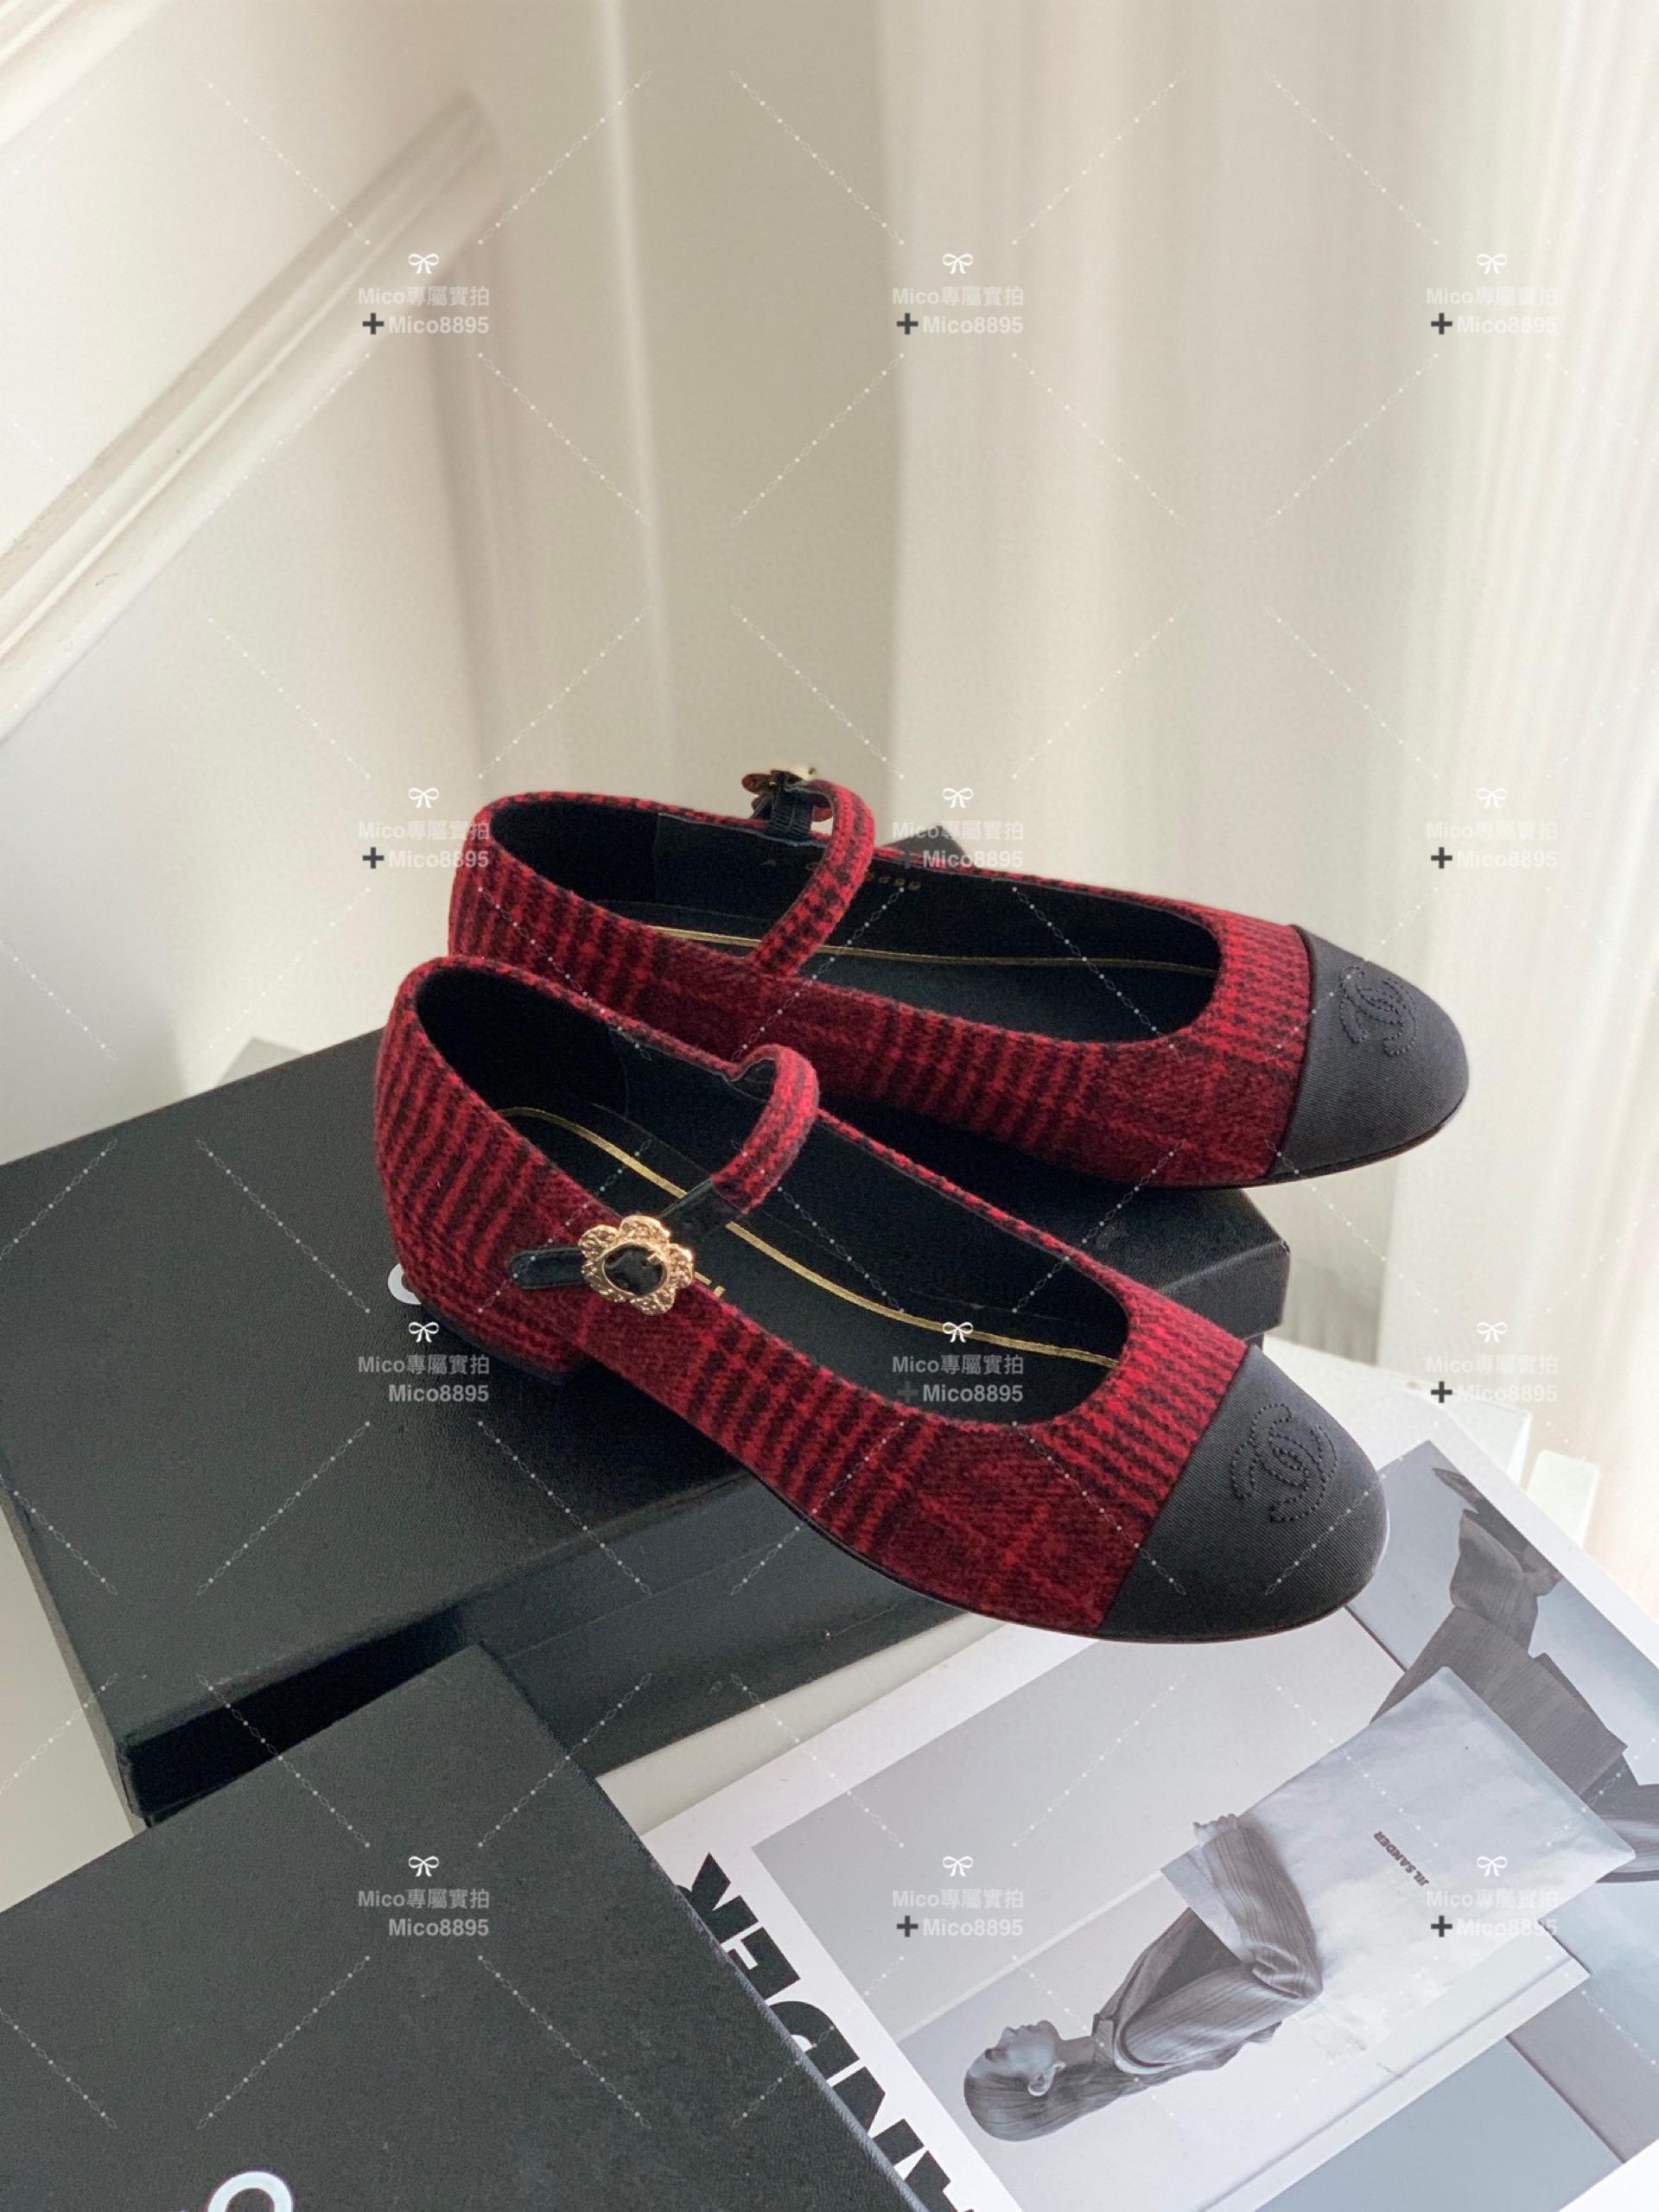 Chanel 英格蘭紅 絨面 側邊小花釦 瑪莉珍平底鞋 繫帶鞋 娃娃鞋